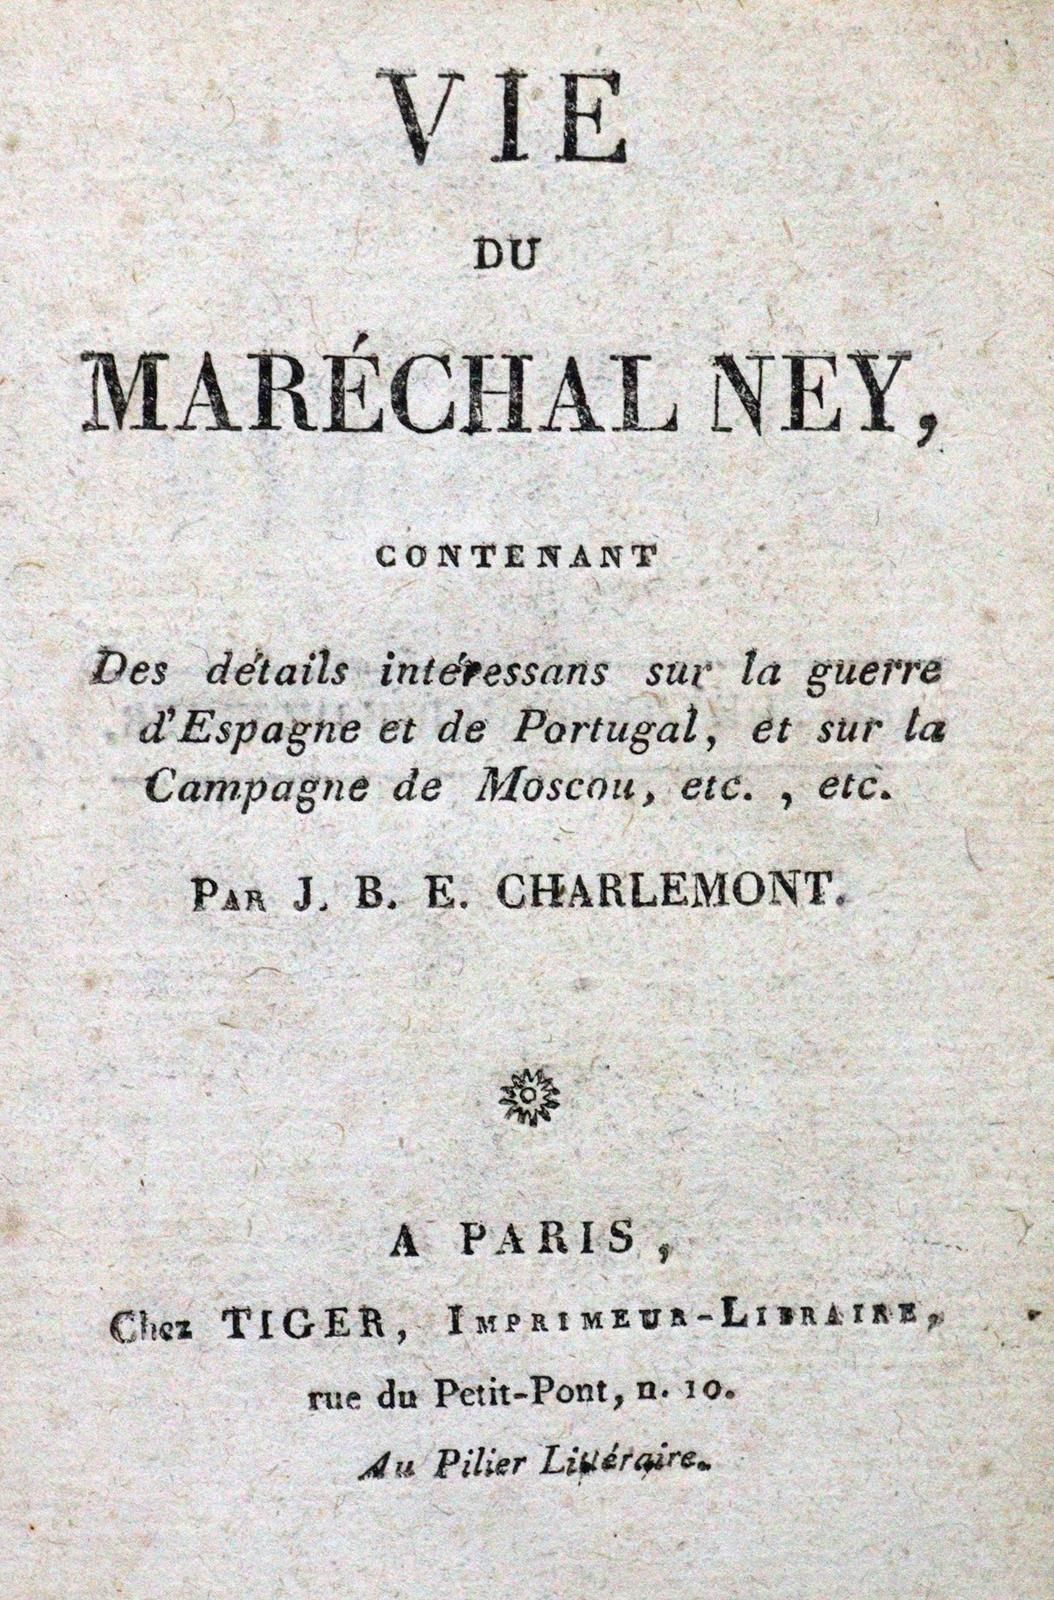 Charlemont,J.B.E. Vie du Marechal Ney, contenant des details interessants sur la&hellip;